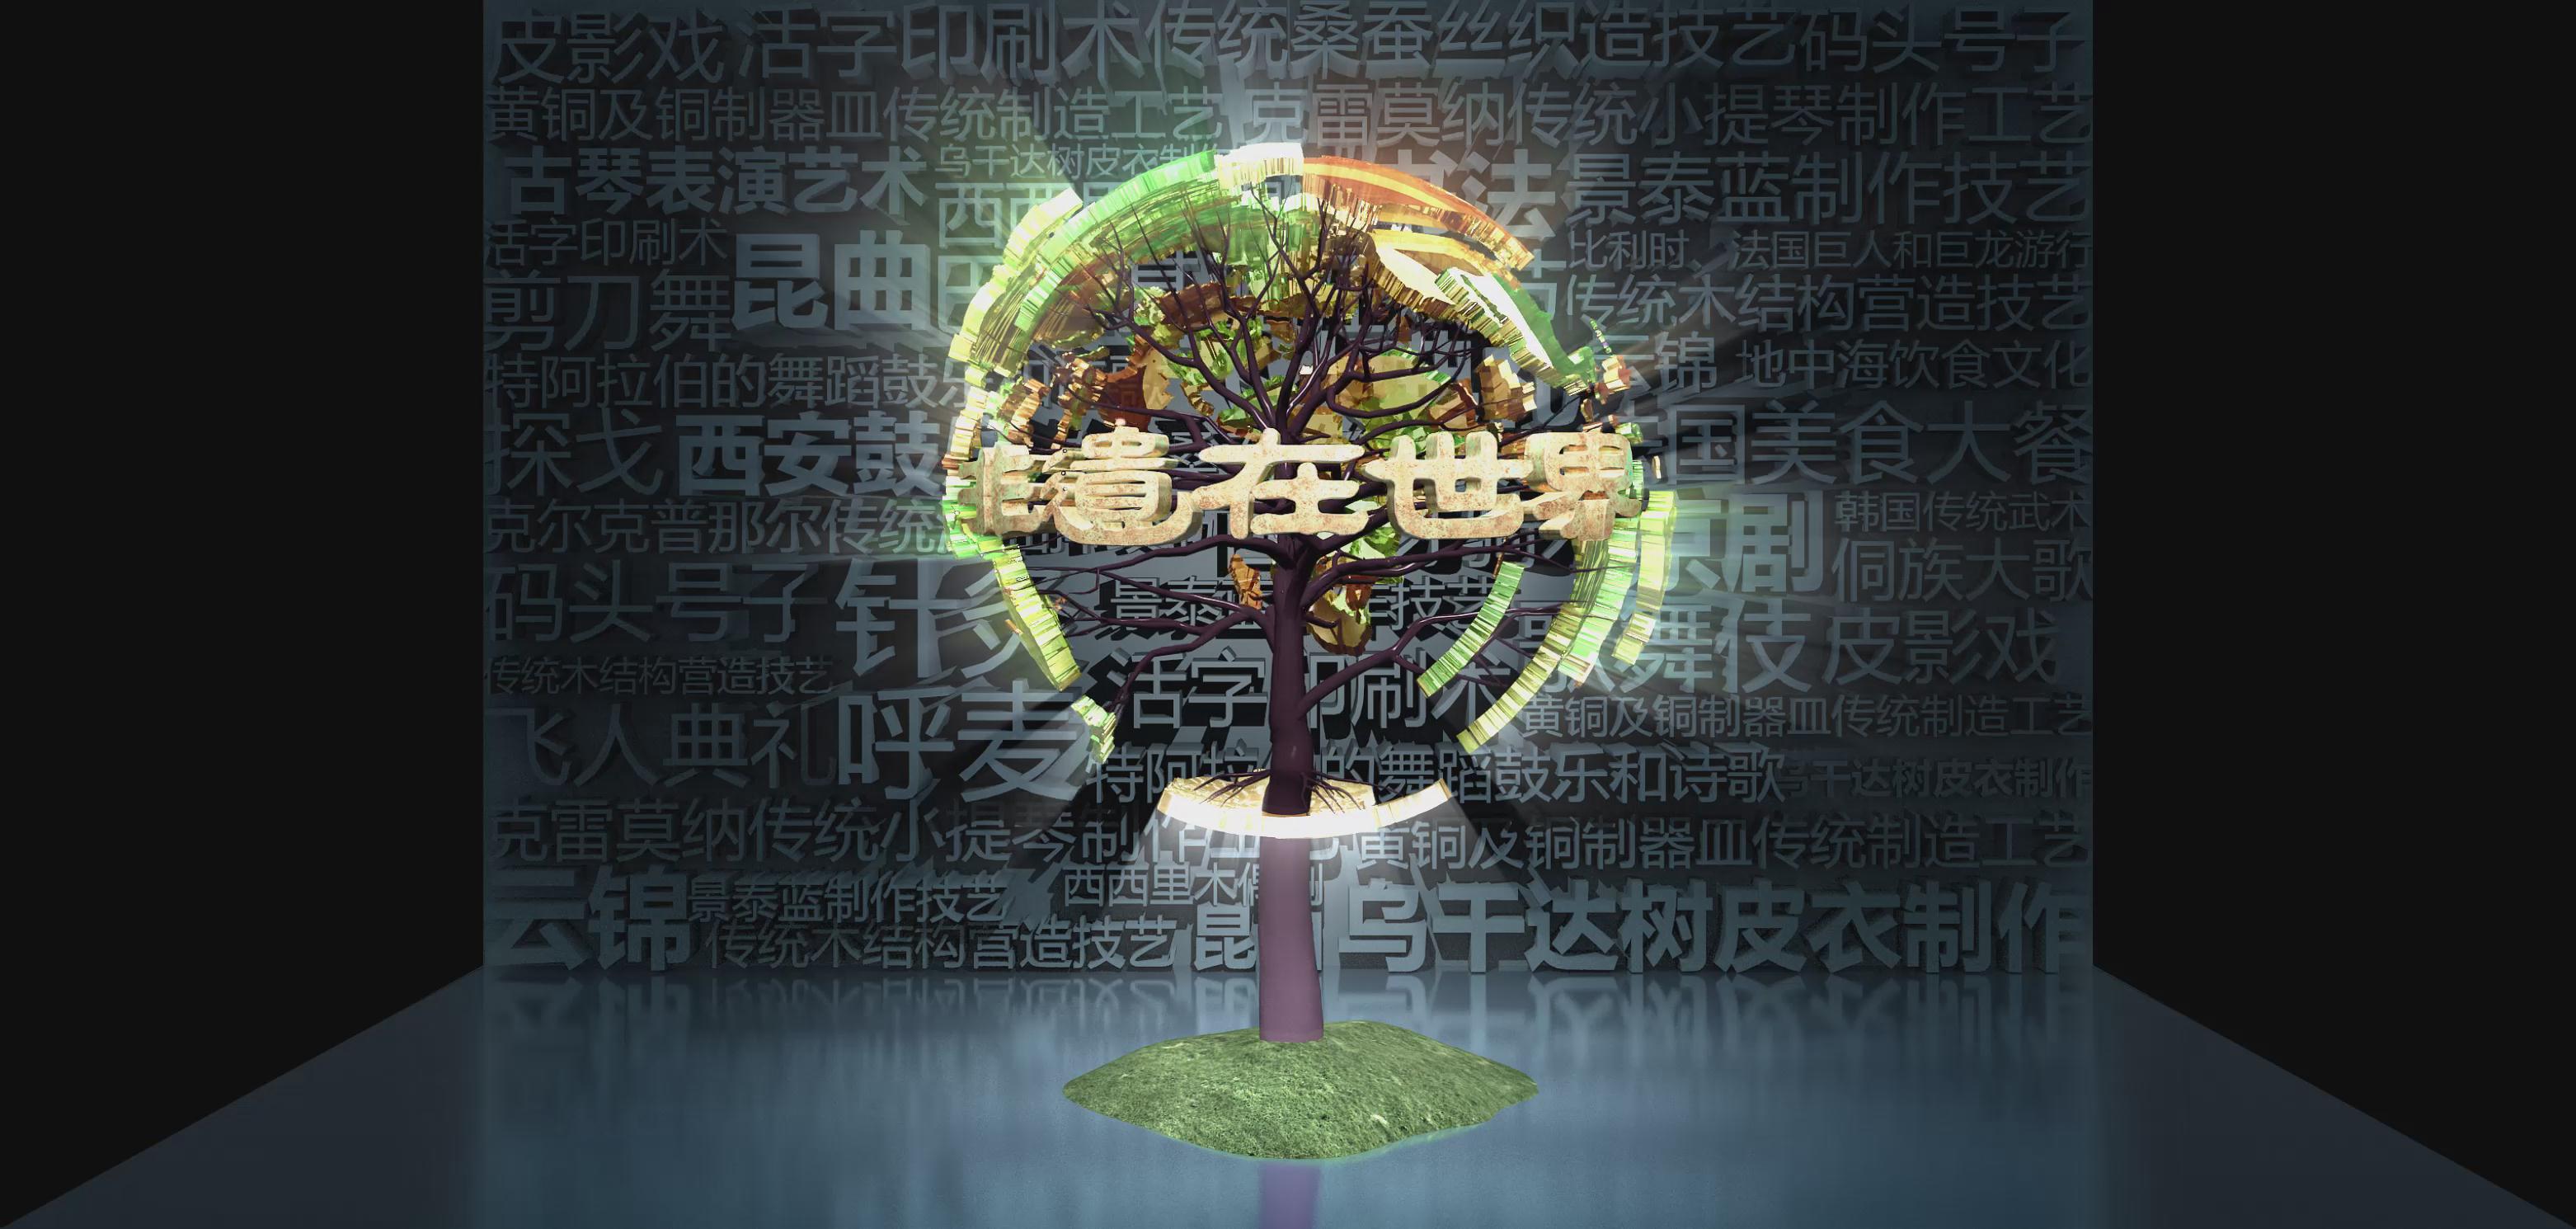 上海大世界非遗在世界屏保效果折幕投影三维影片